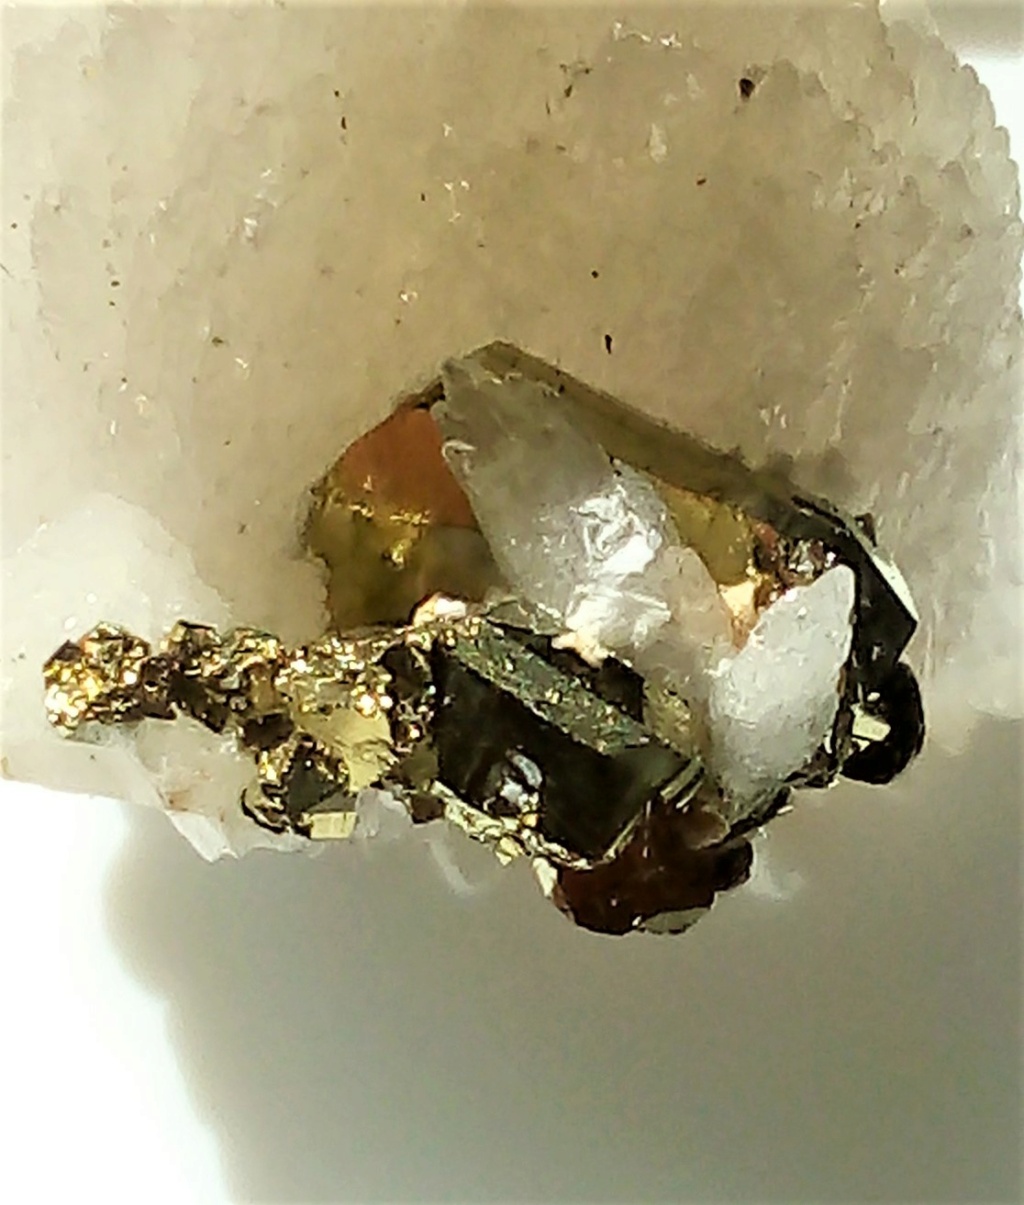 Minéraux de la mine CLARA autres que la Fluorite et la barite - Page 3 Img_2462